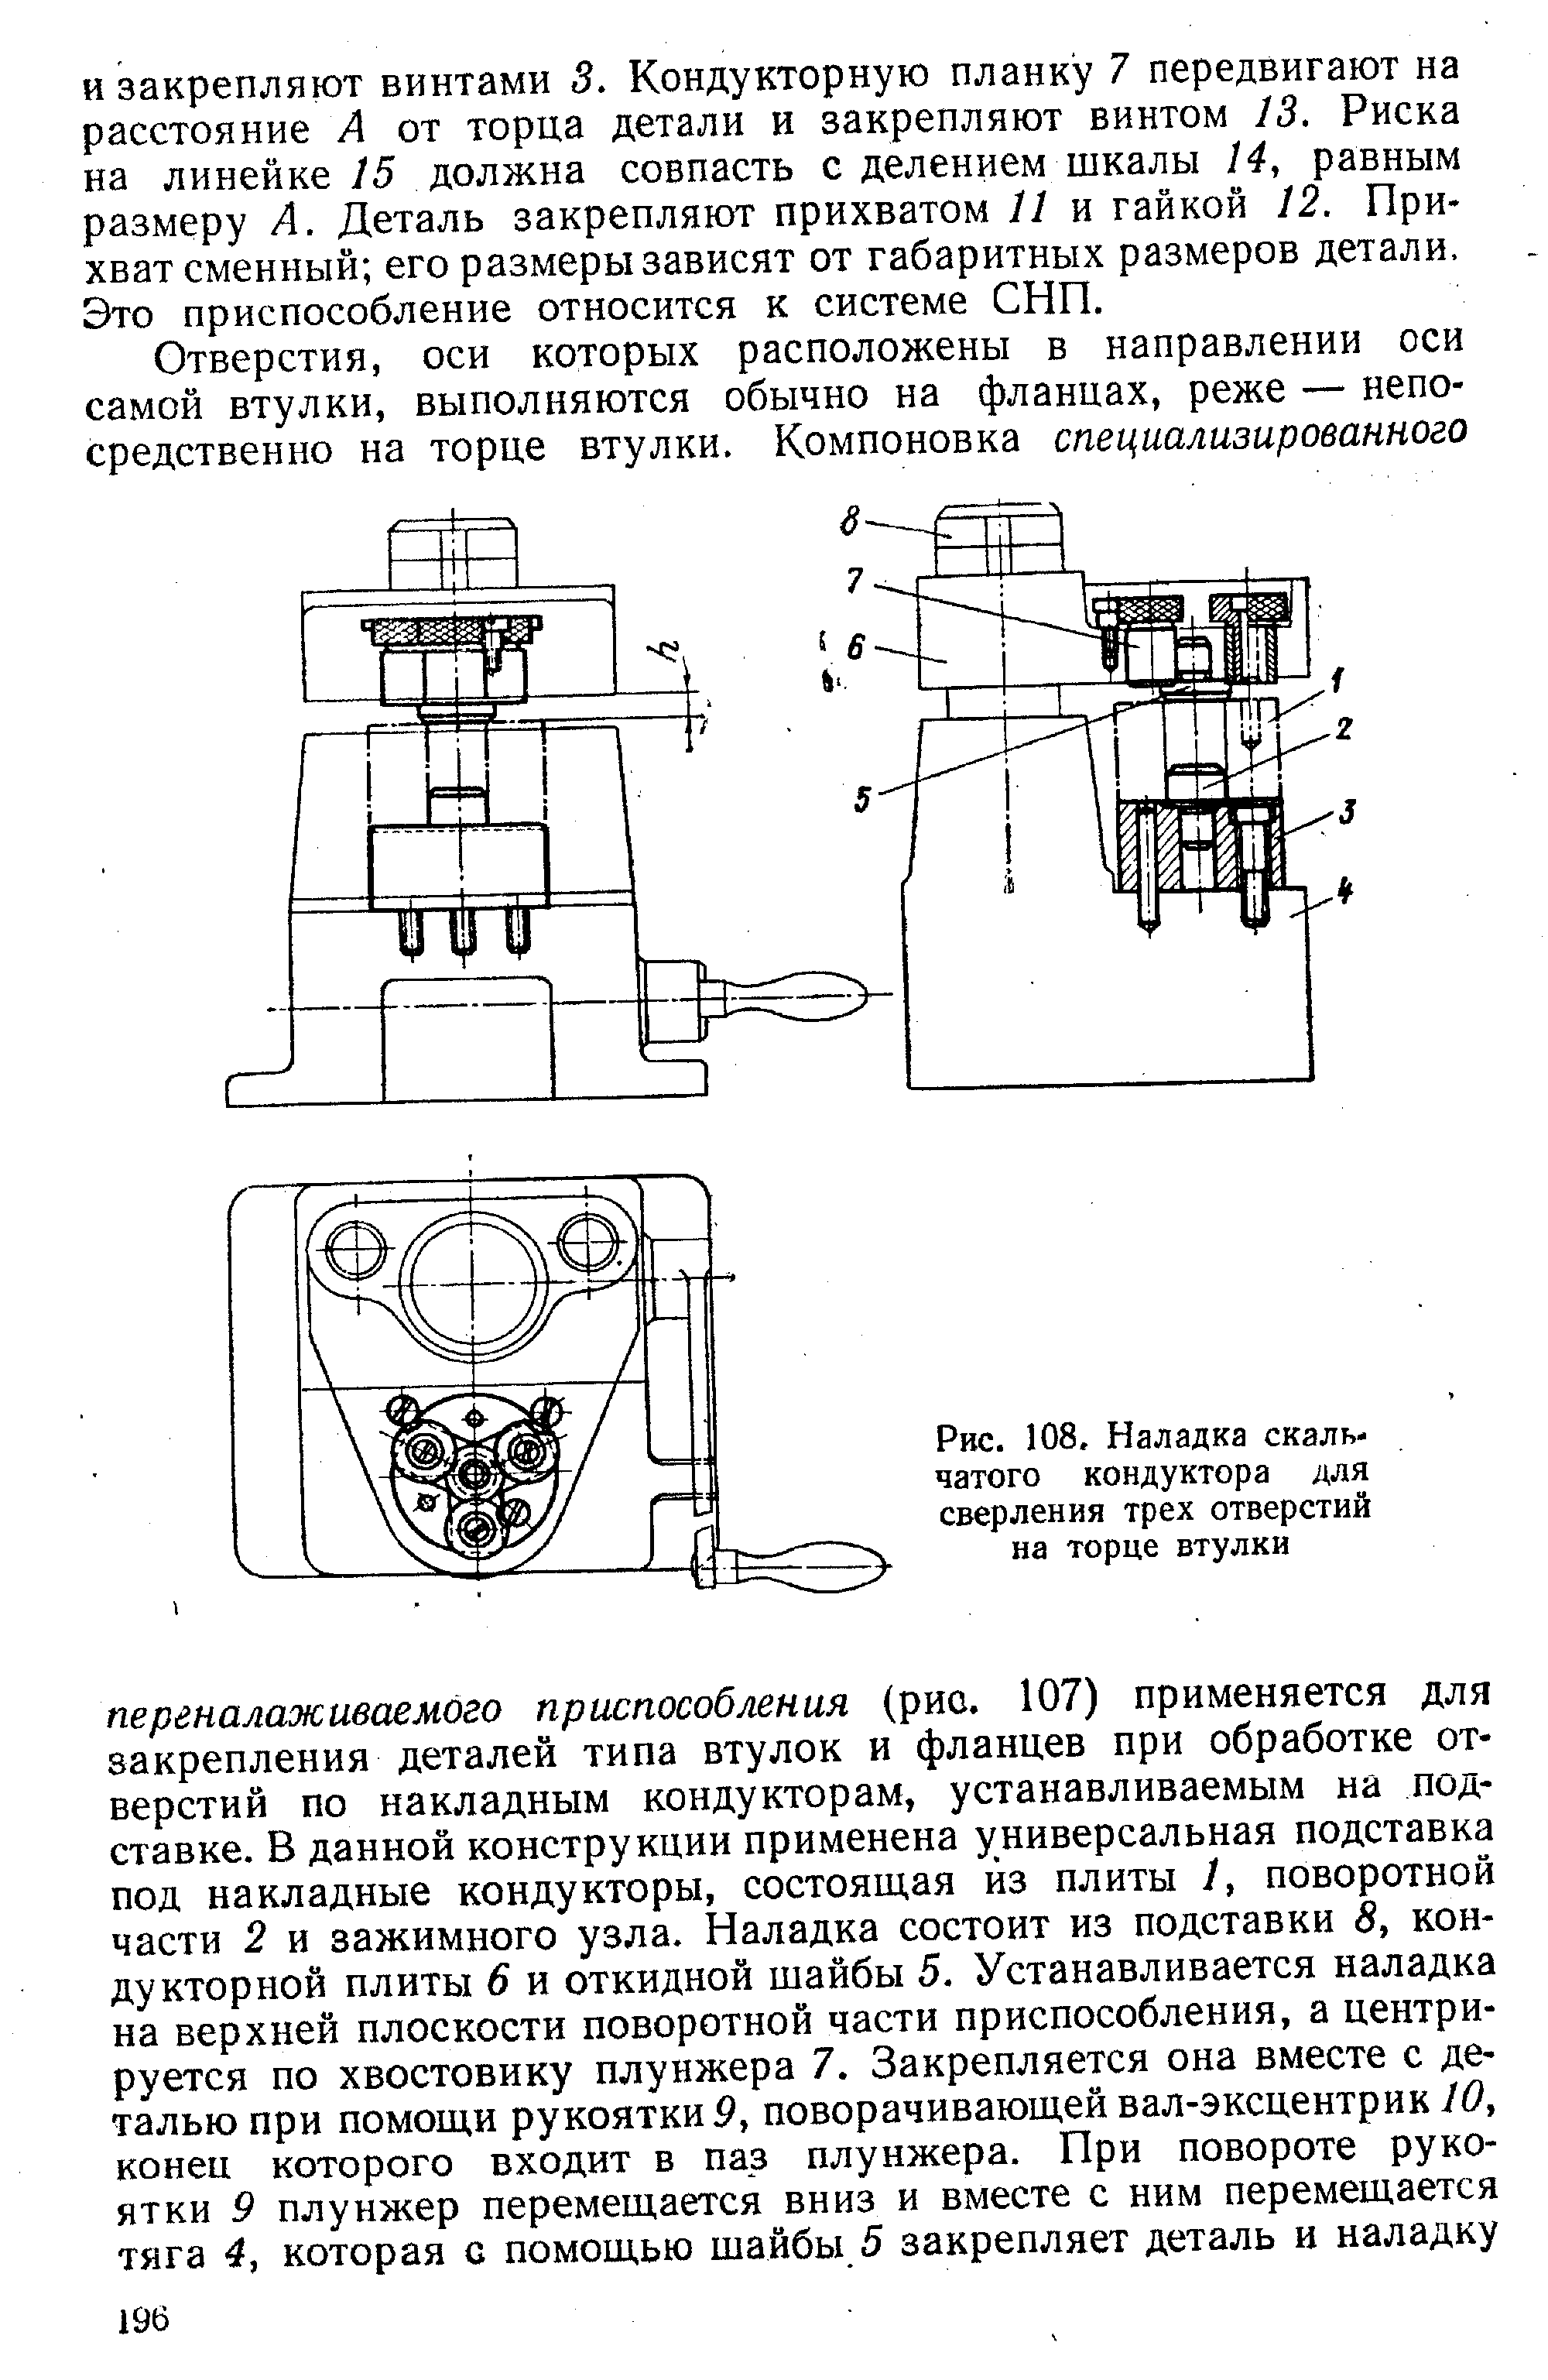 Рис. 108, Наладка скальчатого кондуктора для сверления трех отверстий на торце втулки
